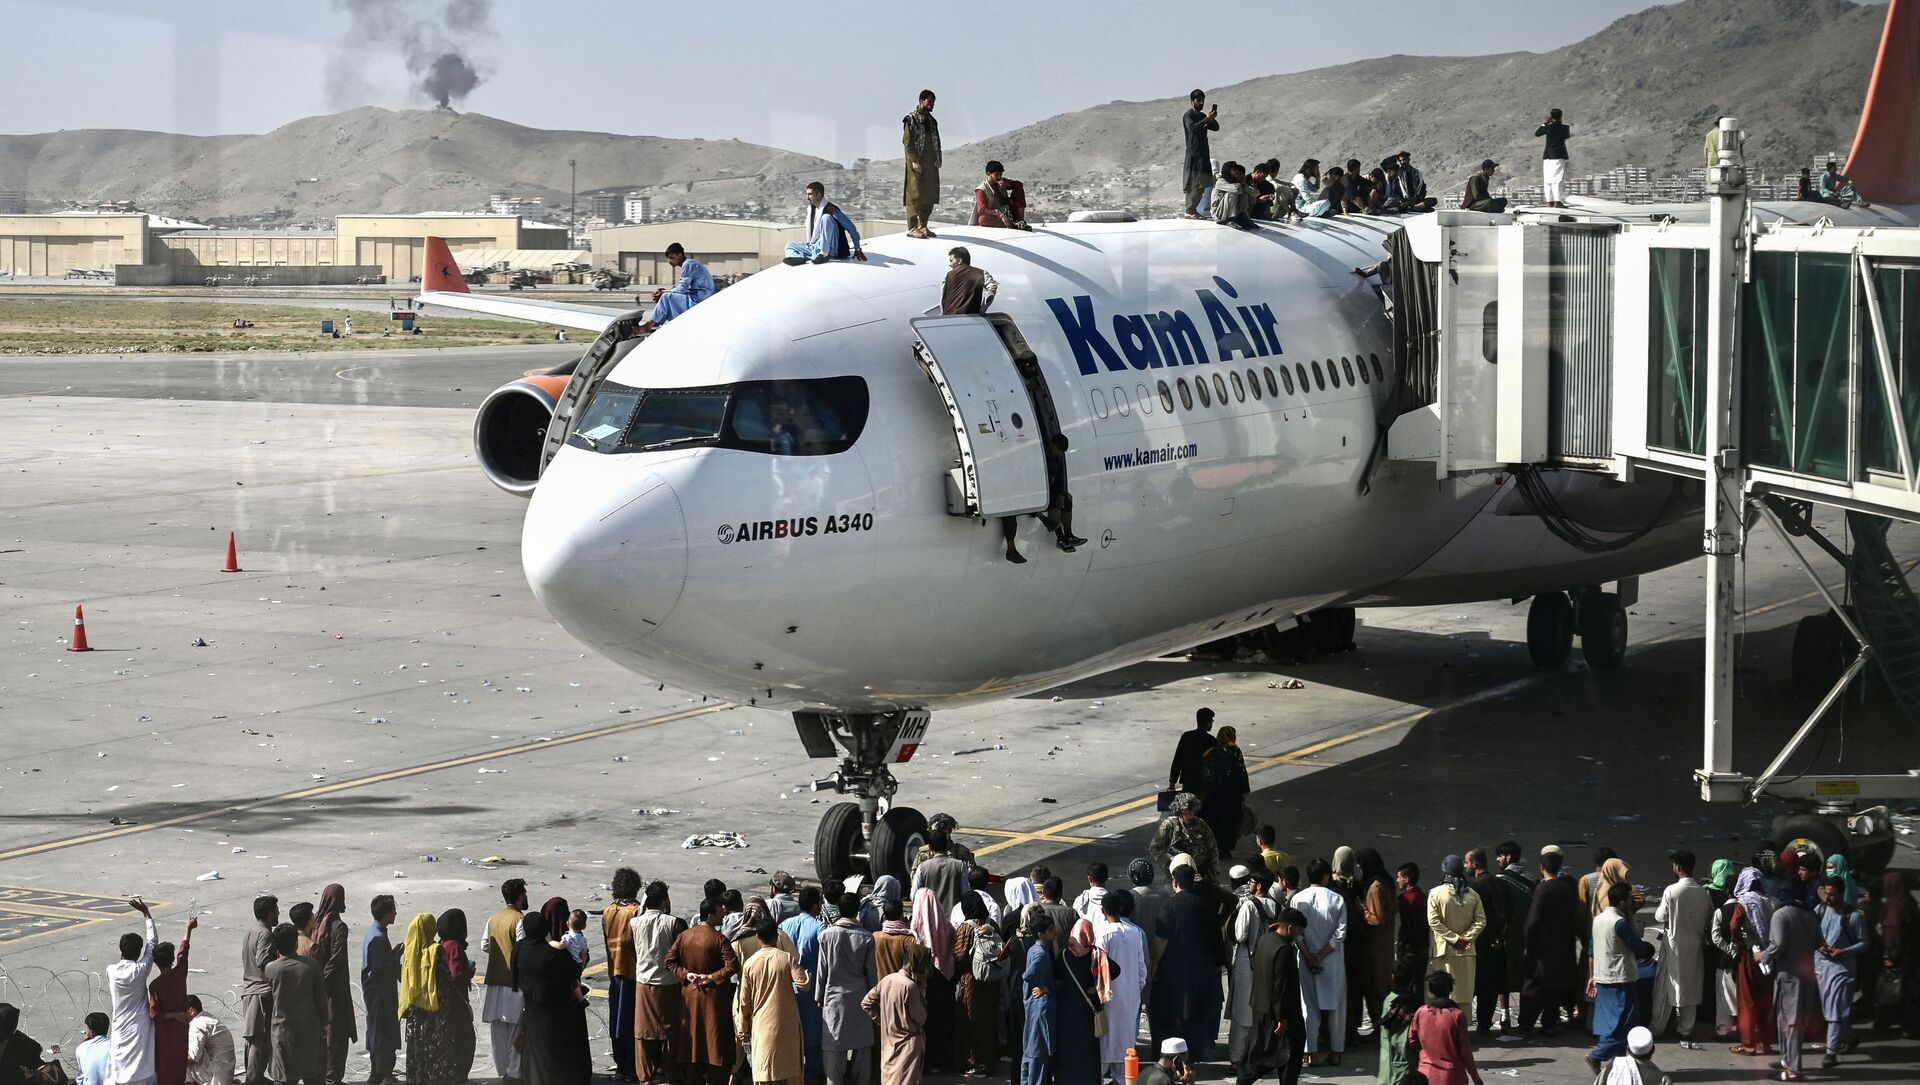 Афганцы забираются на самолет в аэропорту после вступления талибов в Кабул - Sputnik Azərbaycan, 1920, 27.08.2021